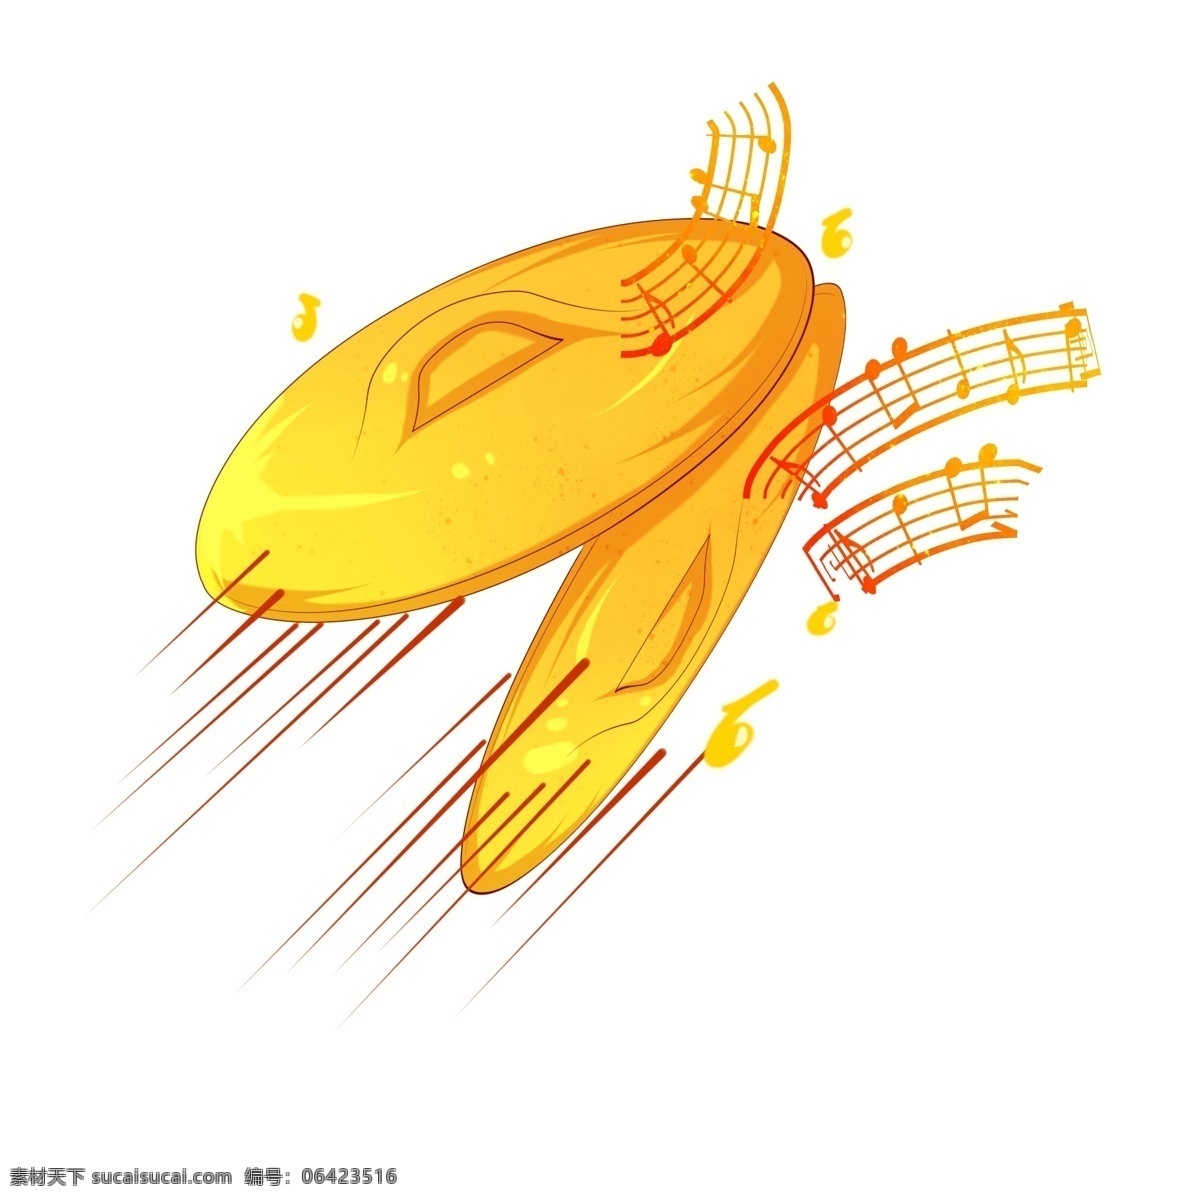 黄色 锣鼓 装饰 插画 黄色的锣鼓 乐器锣鼓 红色的乐符 漂亮的锣鼓 锣鼓装饰 锣鼓插画 立体锣鼓